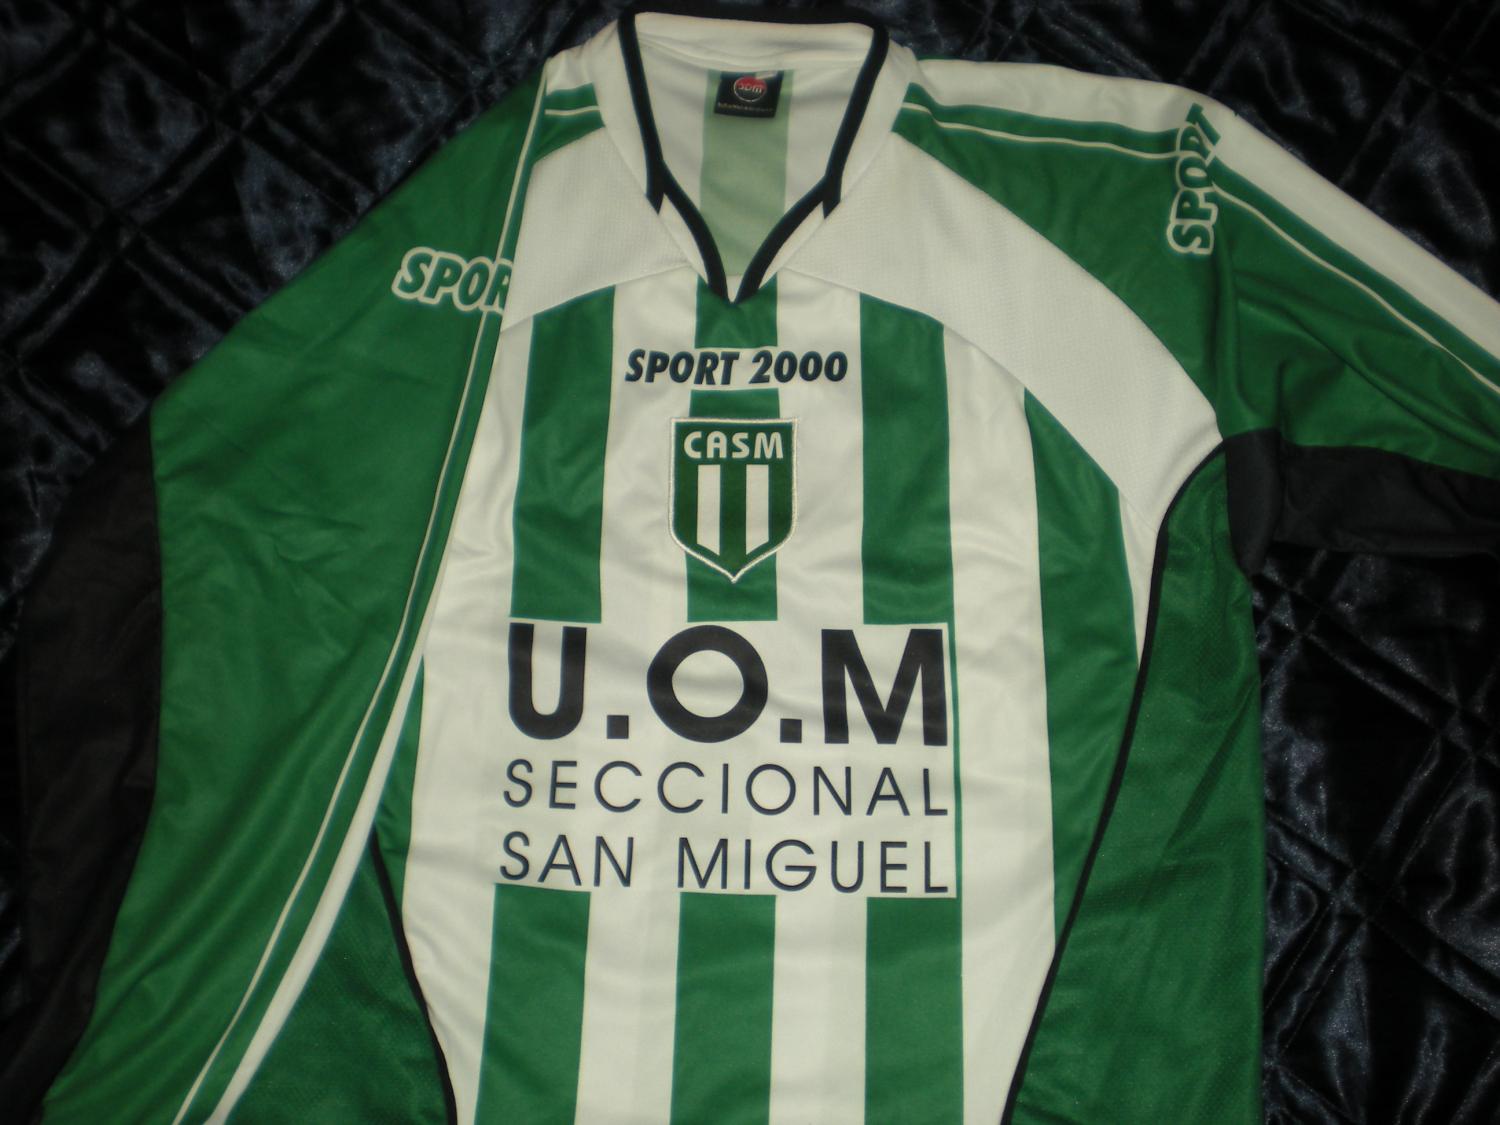 Club Atletico San Miguel